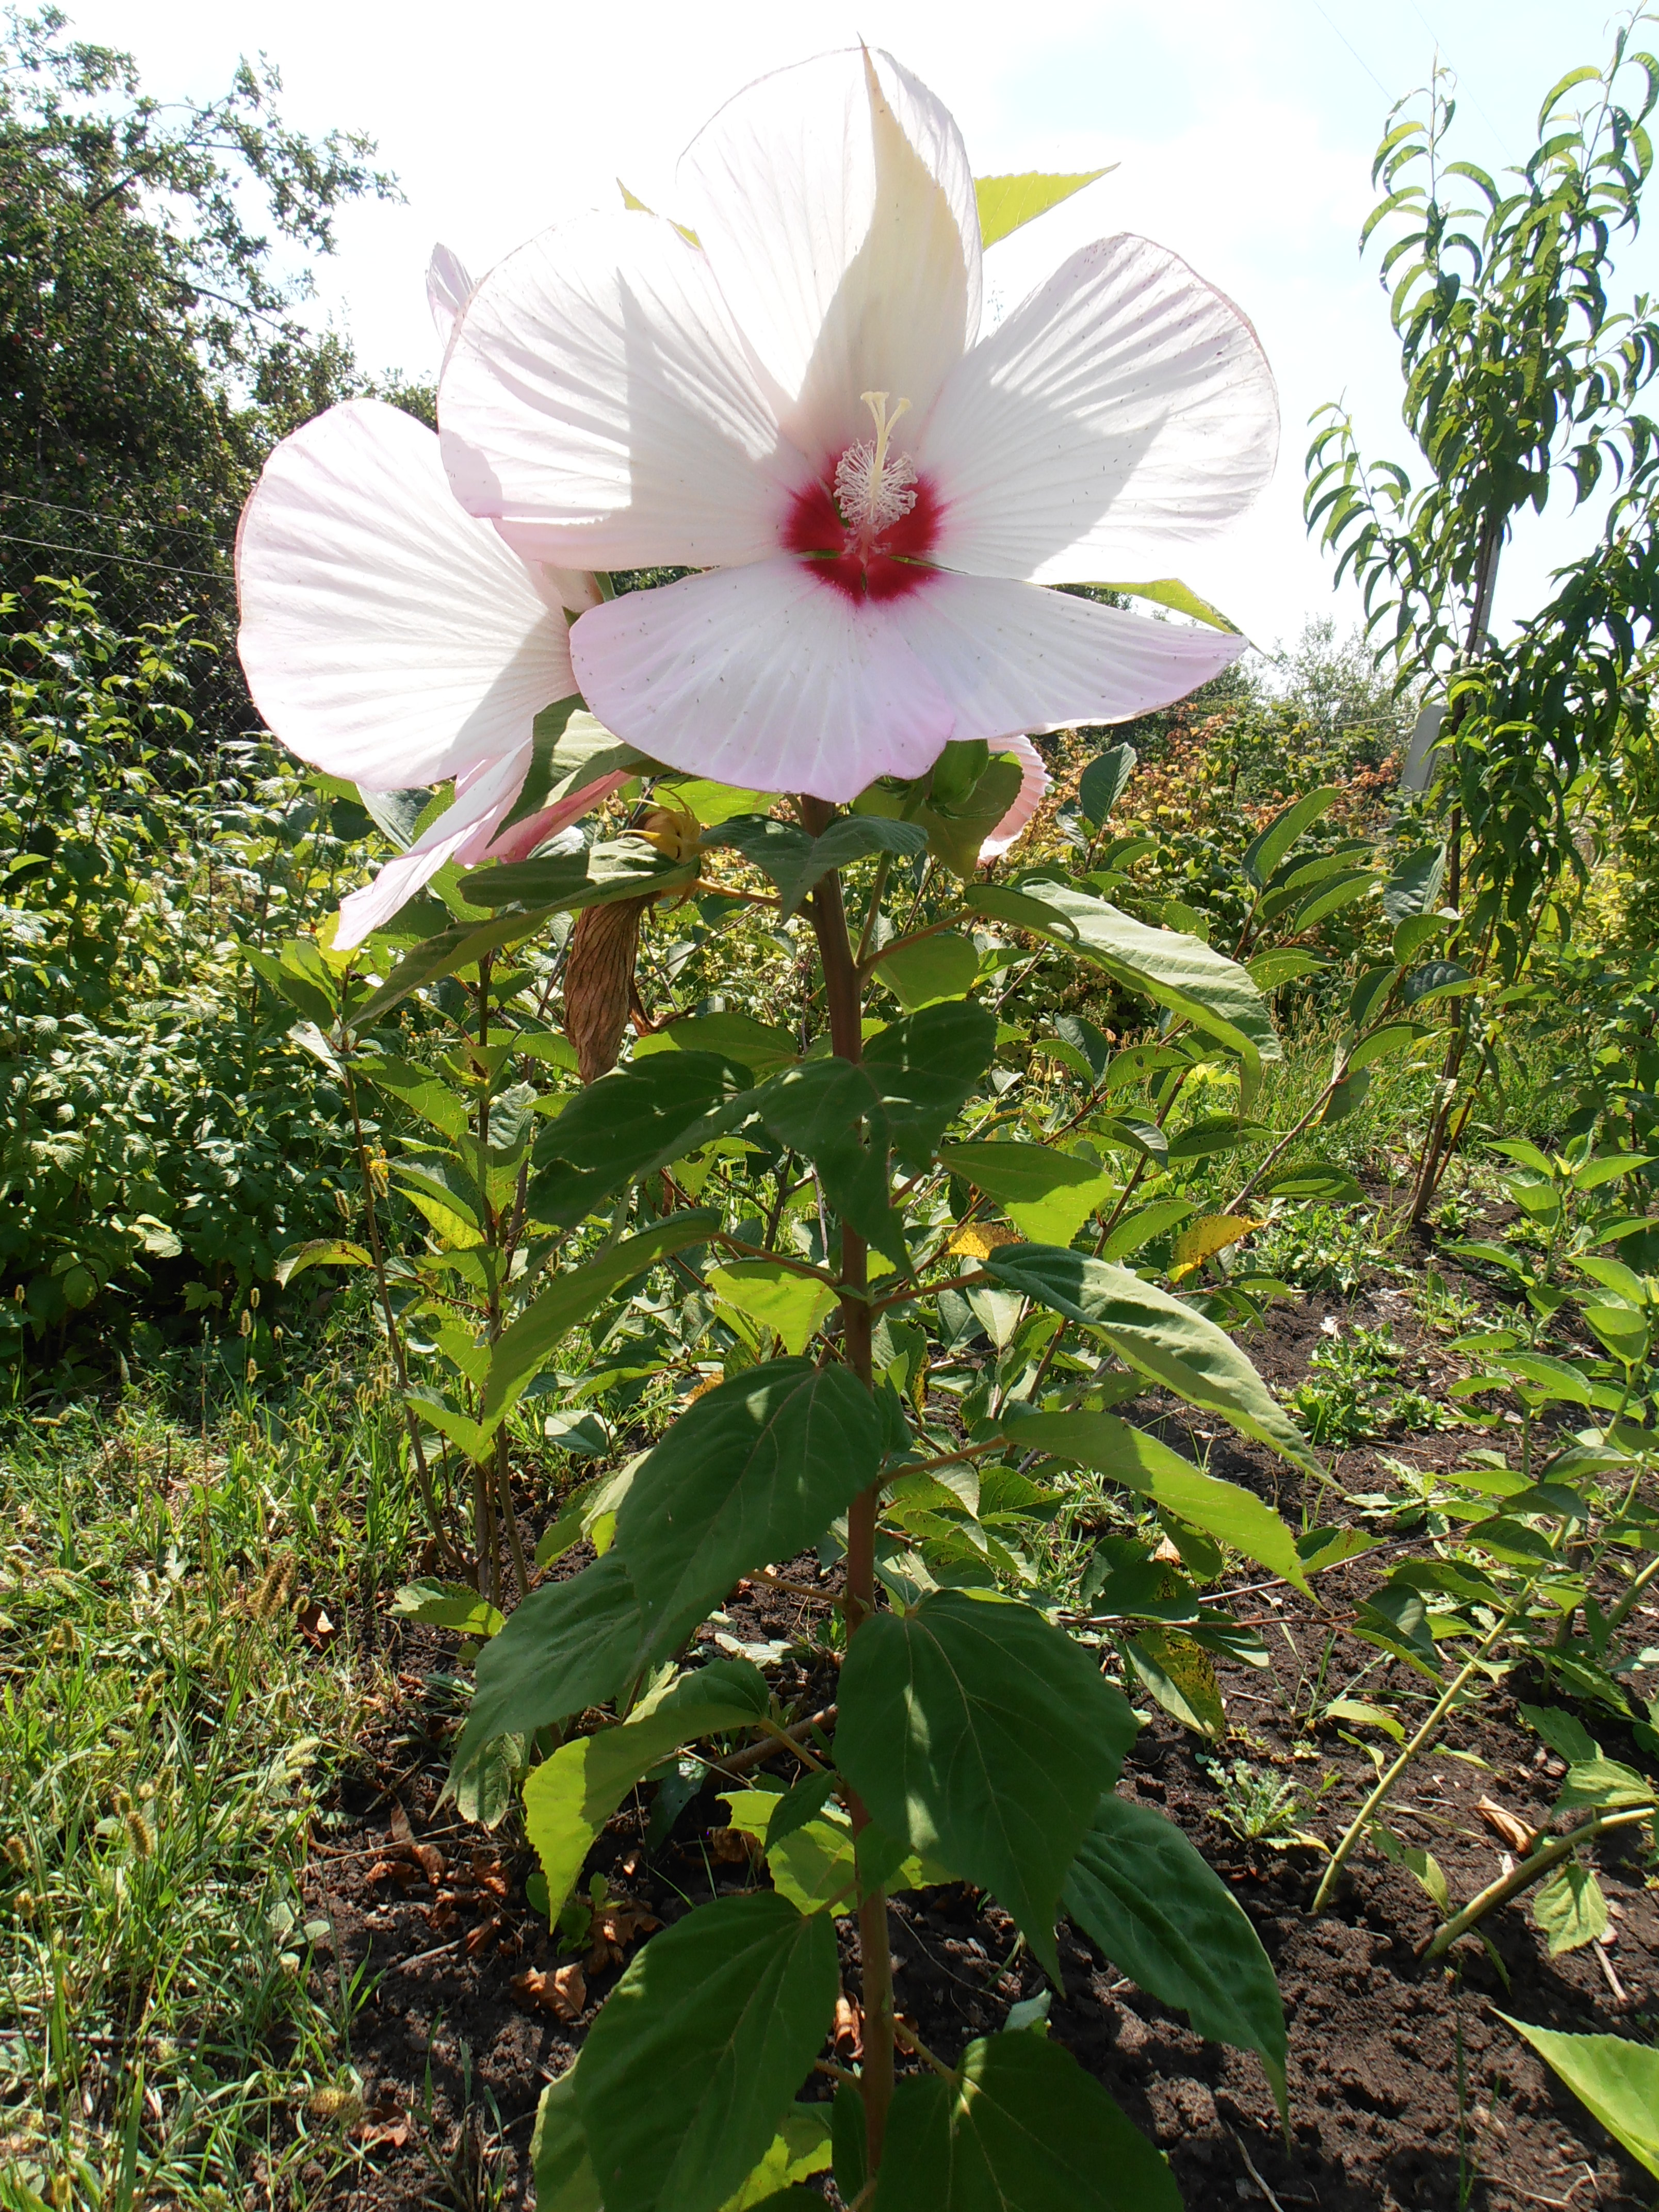 Гибискус древовидный выращивание и размножение в открытом грунте, как ухаживать за китайской розой в беларуси и подмосковье, цветок смерти: почему?